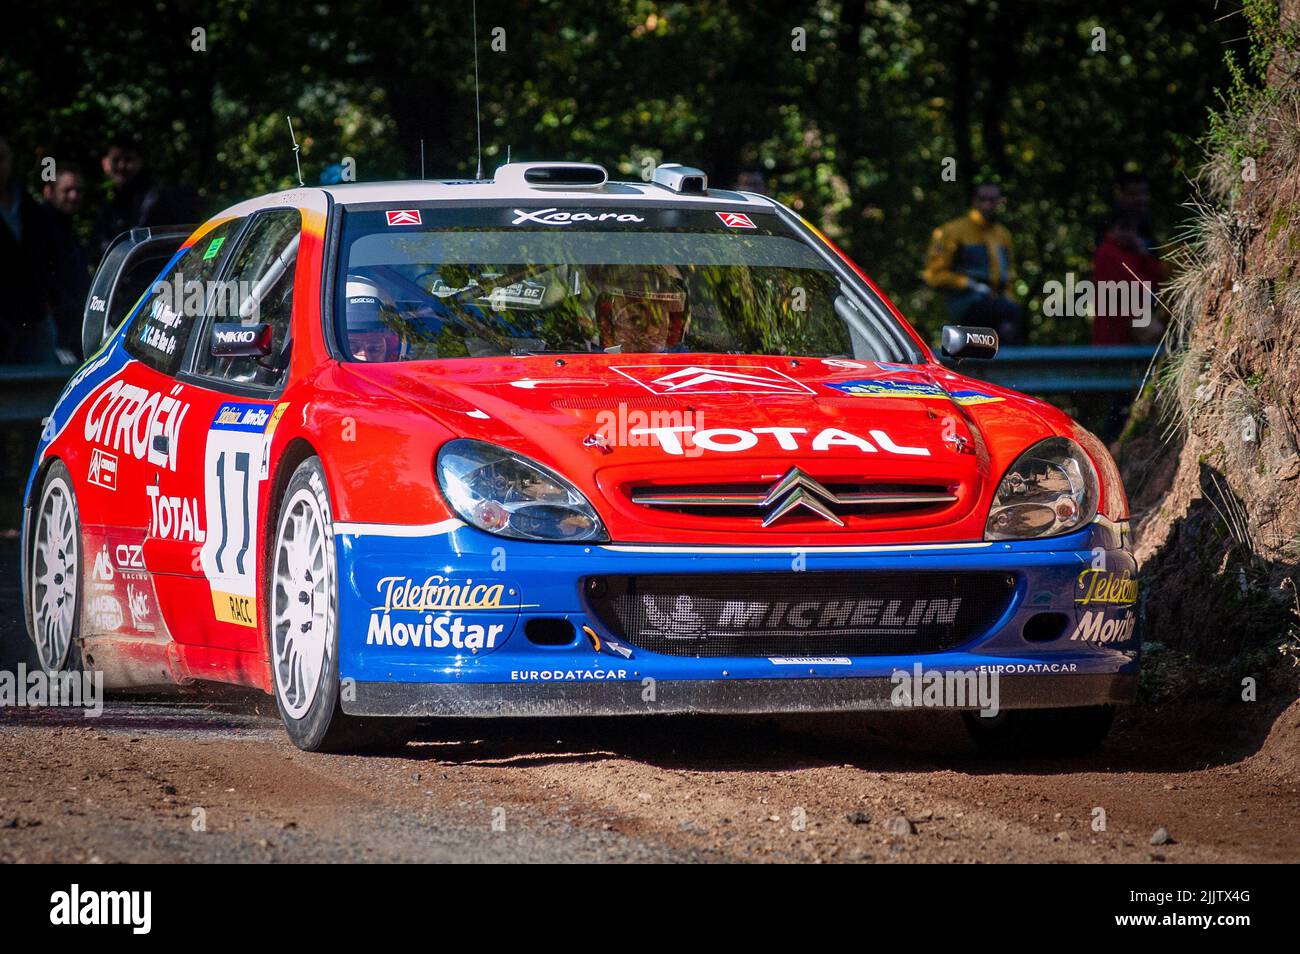 La Citroen WRC Rally Car Colin McRae Foto Stock